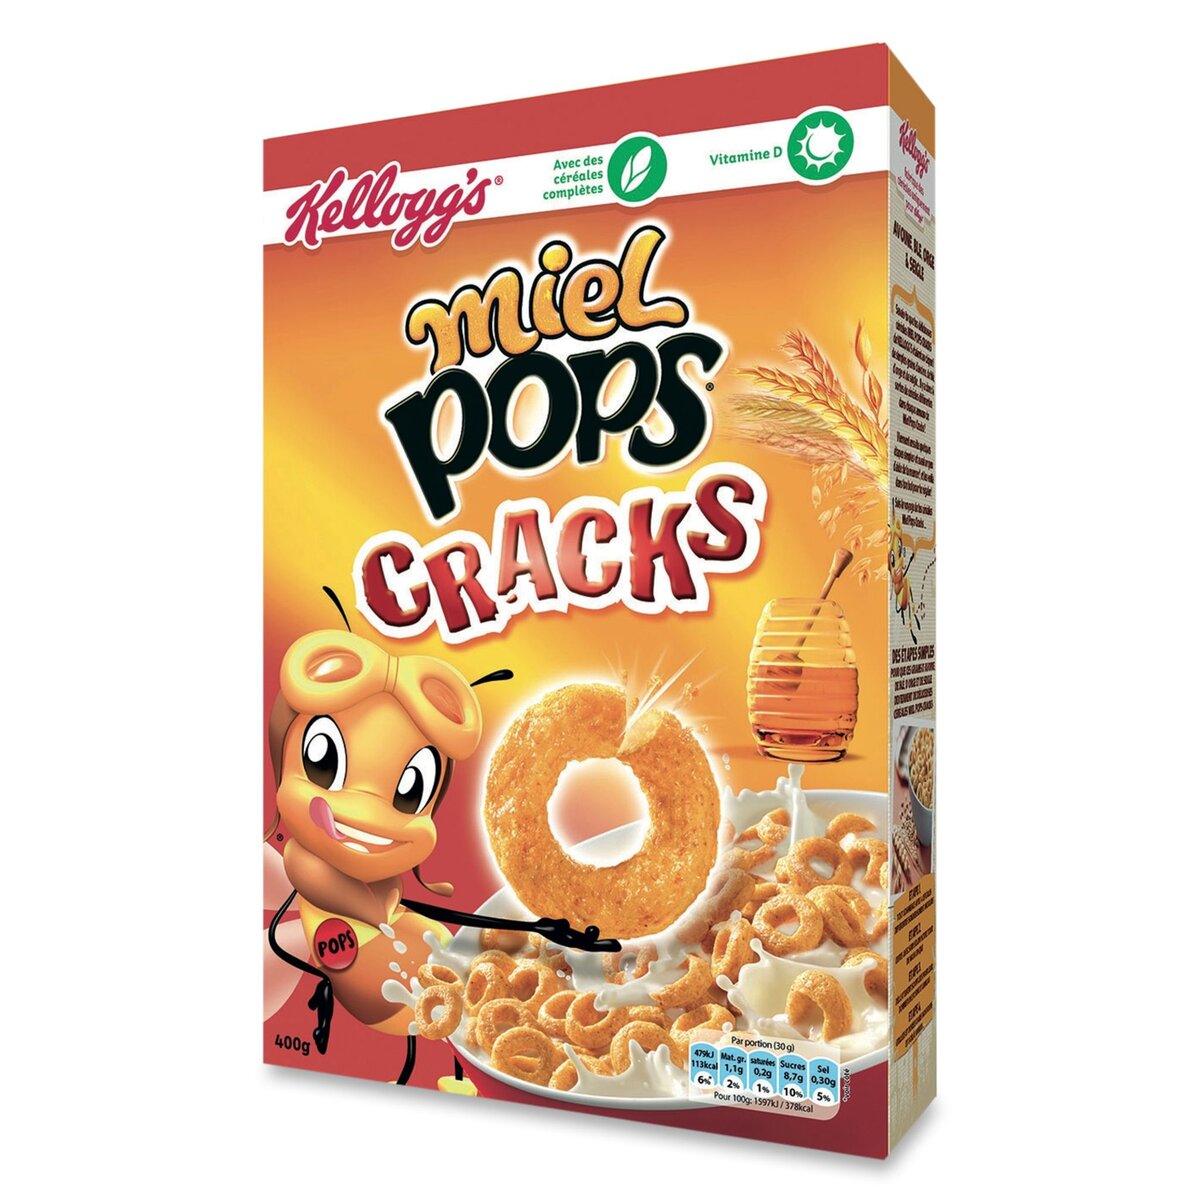 MIEL POP'S Kellogg's miel pop's cracks 400g